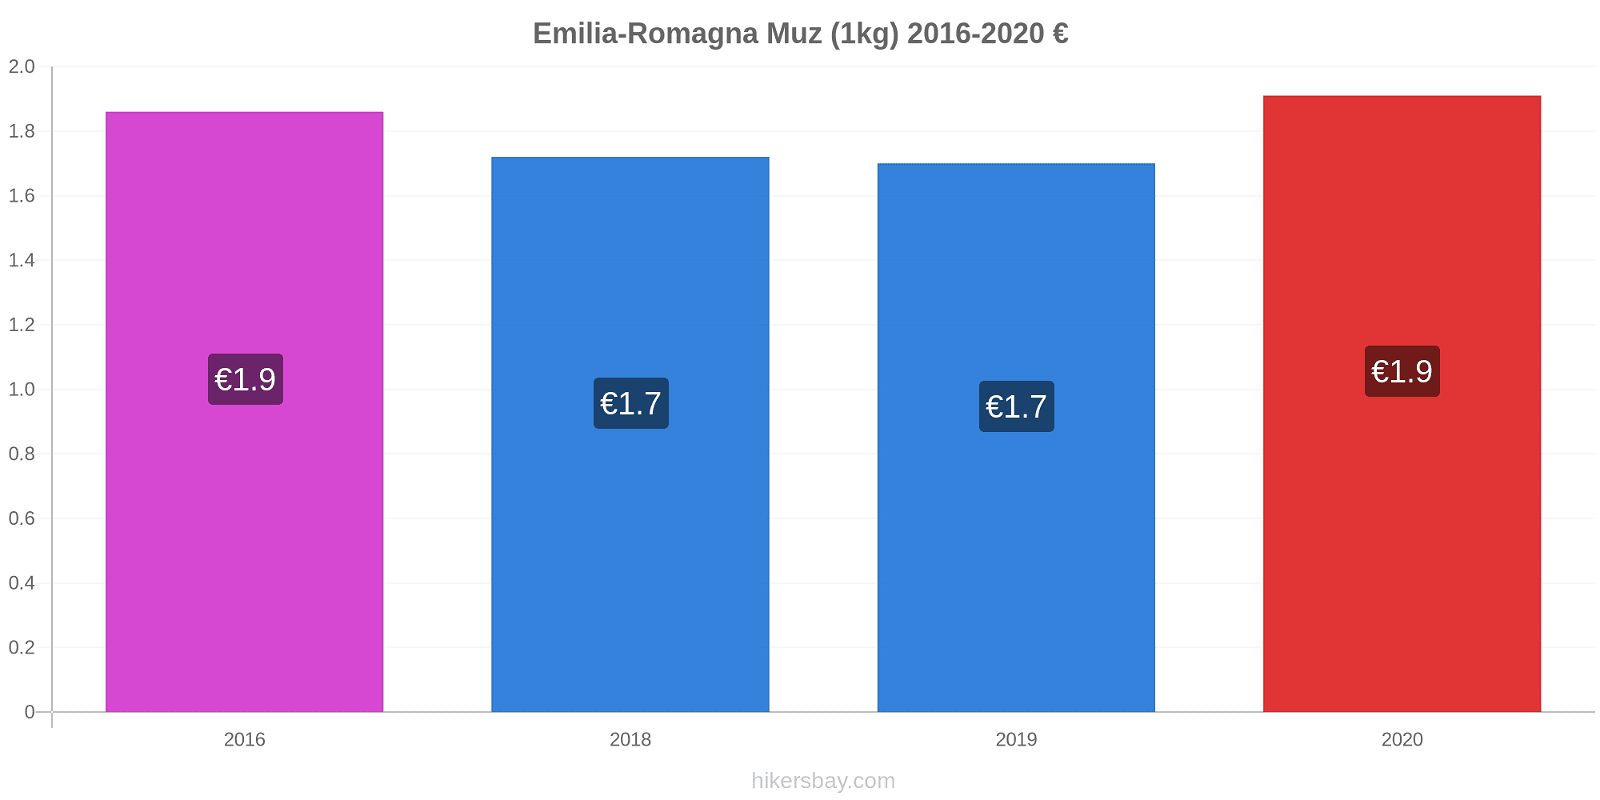 Emilia-Romagna fiyat değişiklikleri Muz (1kg) hikersbay.com